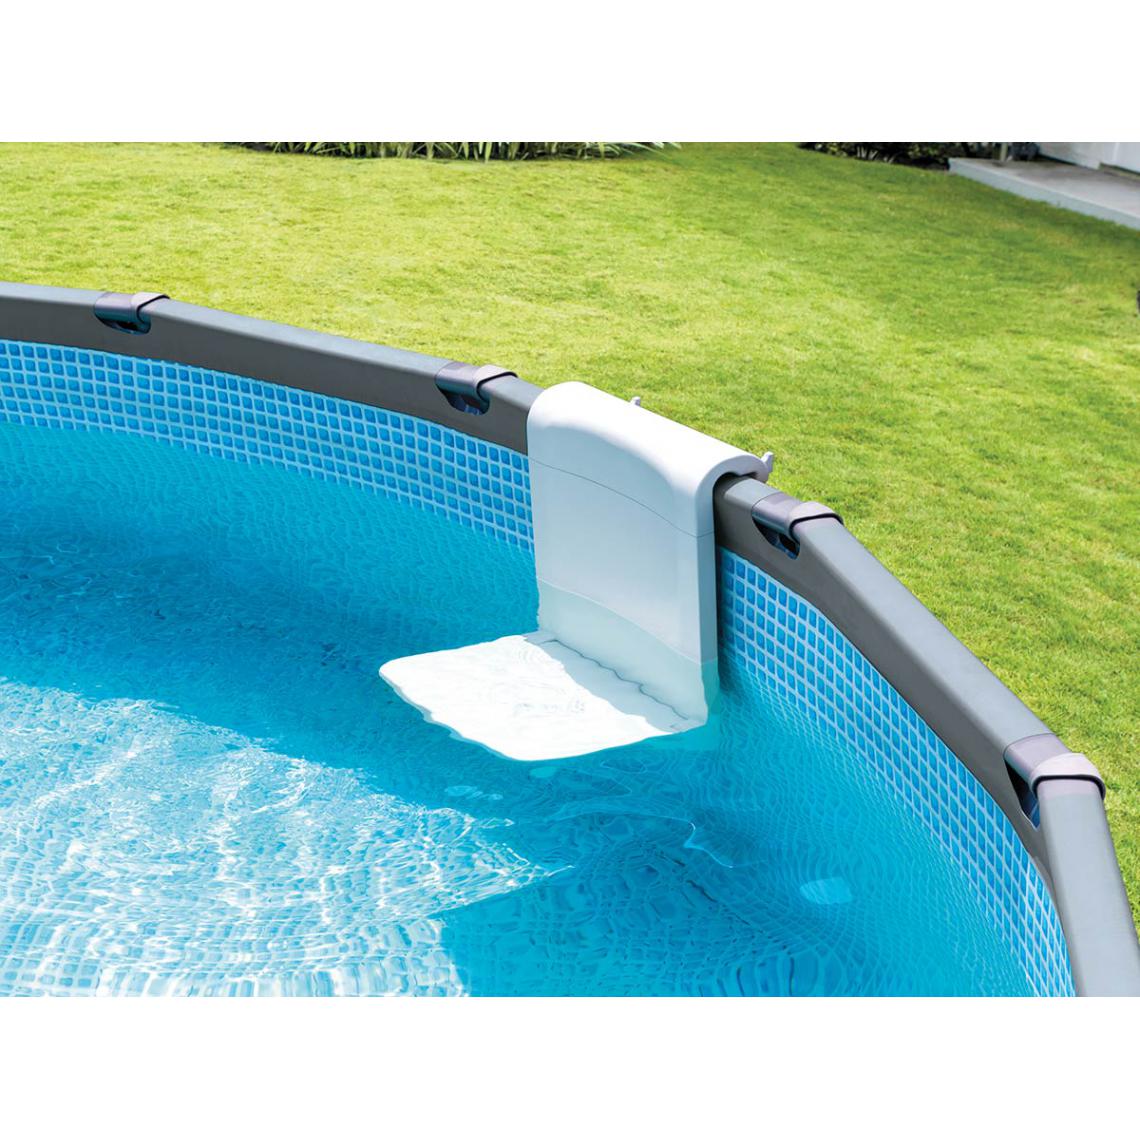 Intex - Siège pour piscine tubulaire - Intex - Accessoires piscines hors sol